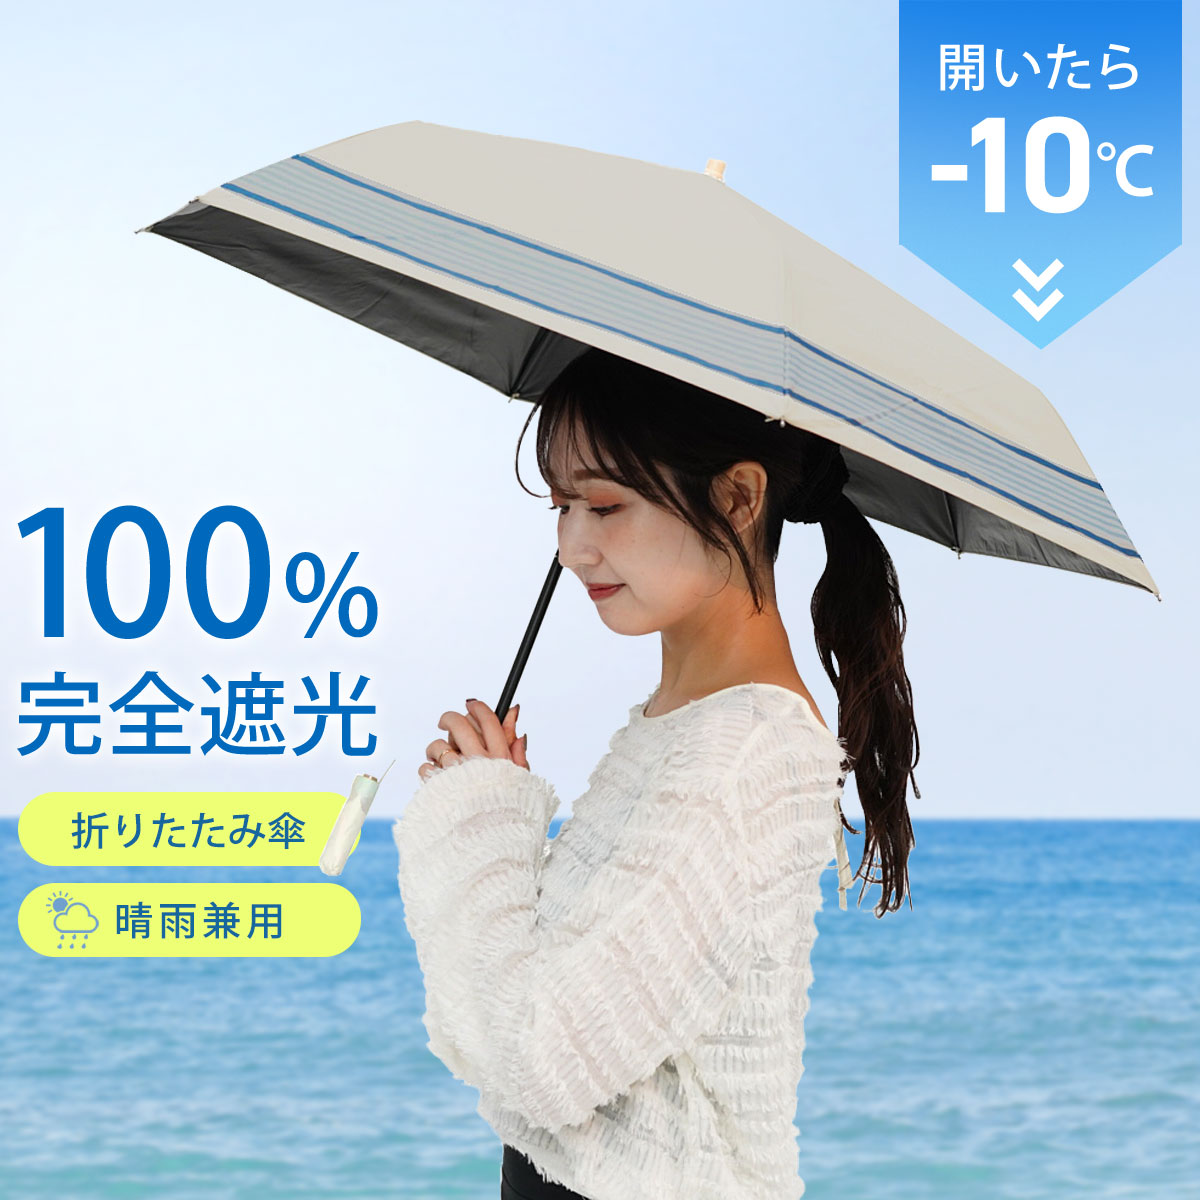 日傘 完全遮光 折りたたみ 折り畳み傘 晴雨兼用 UVカット レディース 日傘 軽量 遮熱 遮光率 100% CLS